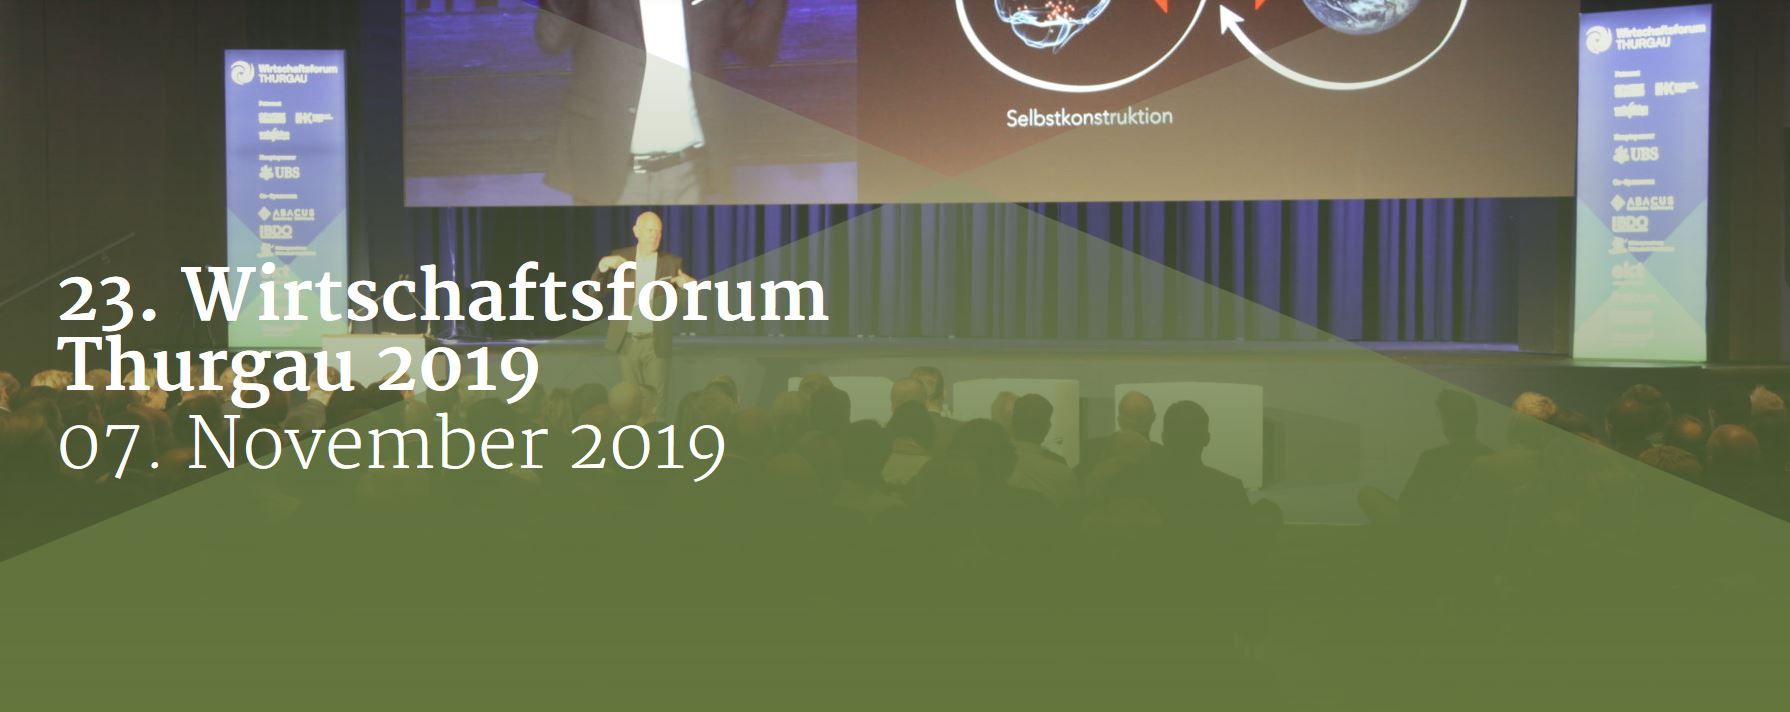 Veranstaltung Wirtschaftsforum Thurgau 2019